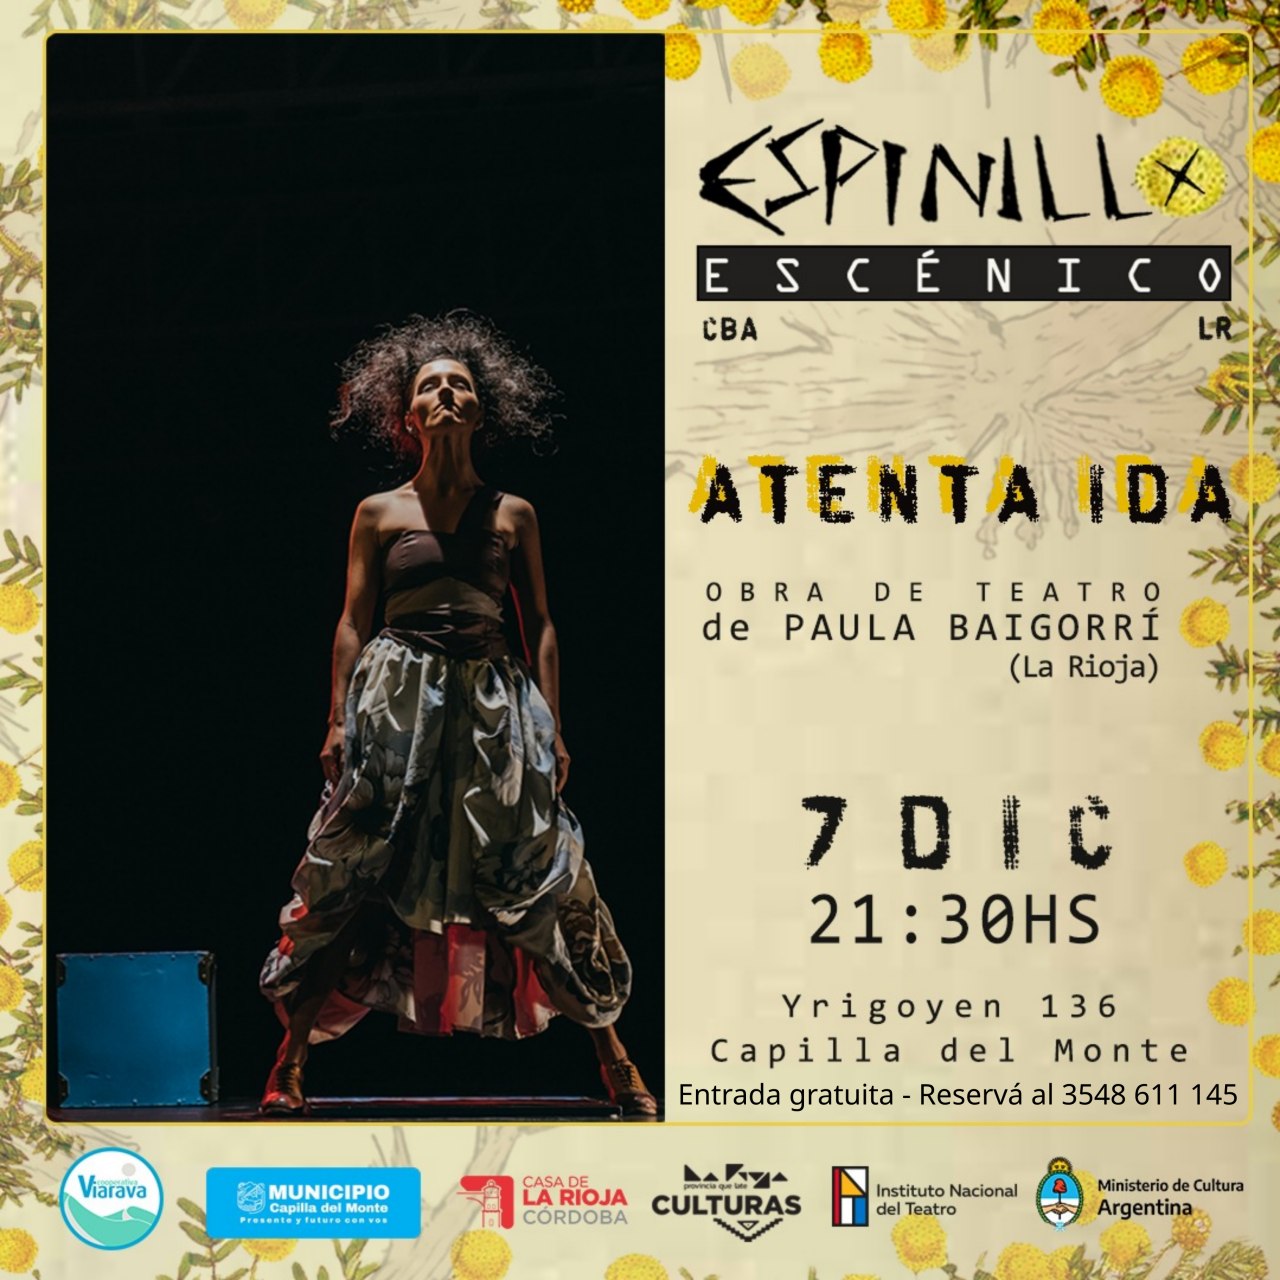 Teatro en Viarava: Con entrada gratuita, Atenta Ida llega a Capilla del Monte